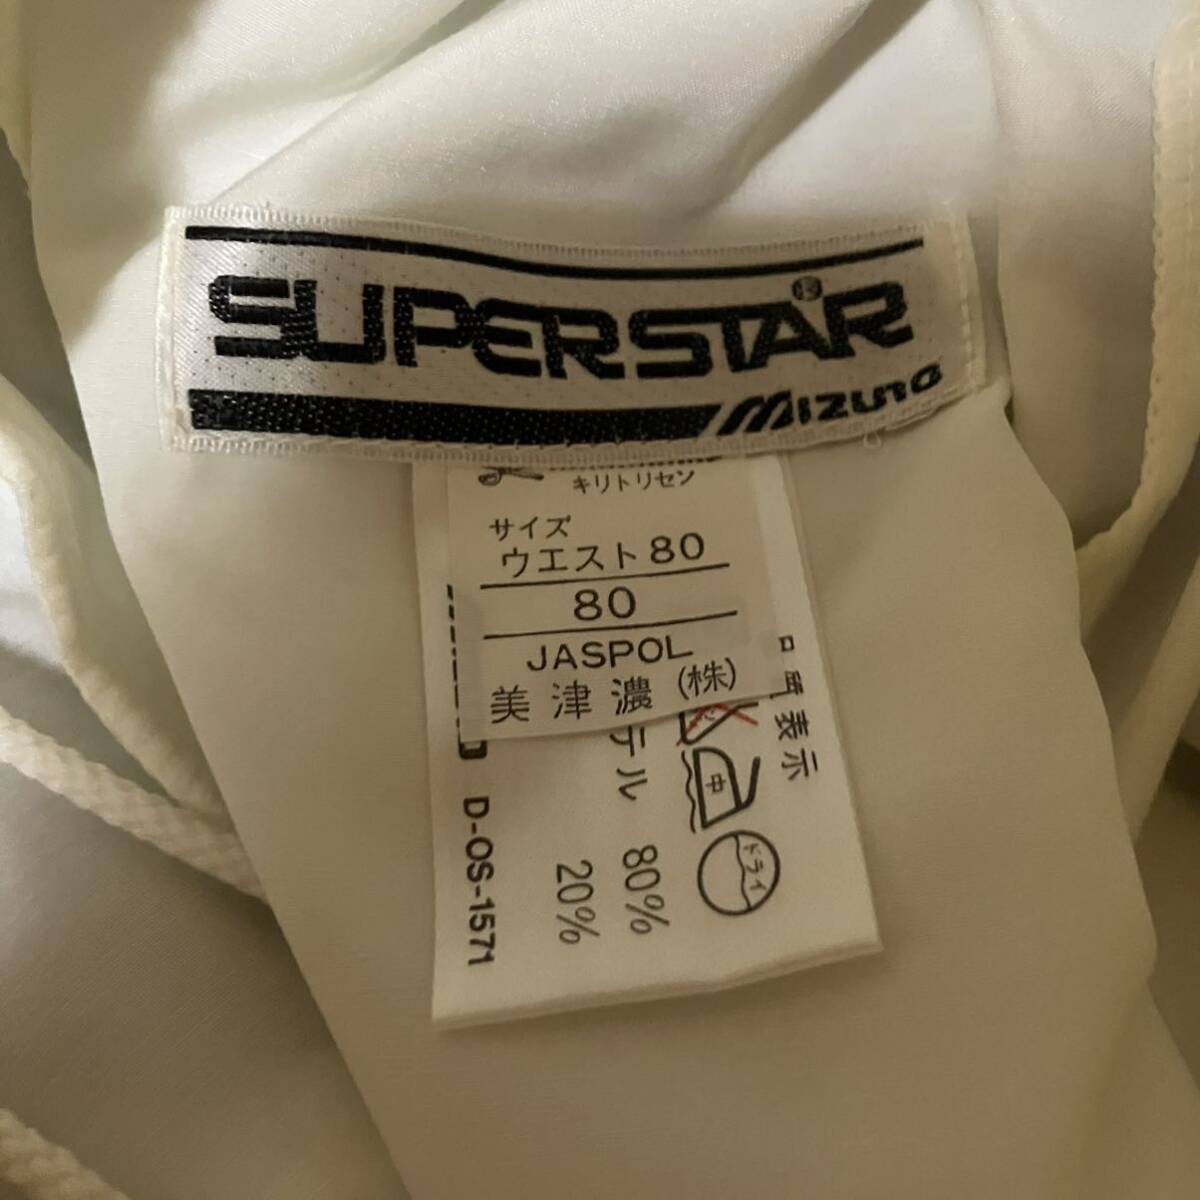 MIZUNO superstar 58RM-4047 L размер бег брюки Short Ran хлеб с биркой Япония стандартный товар подлинная вещь не использовался super Star Mizuno 